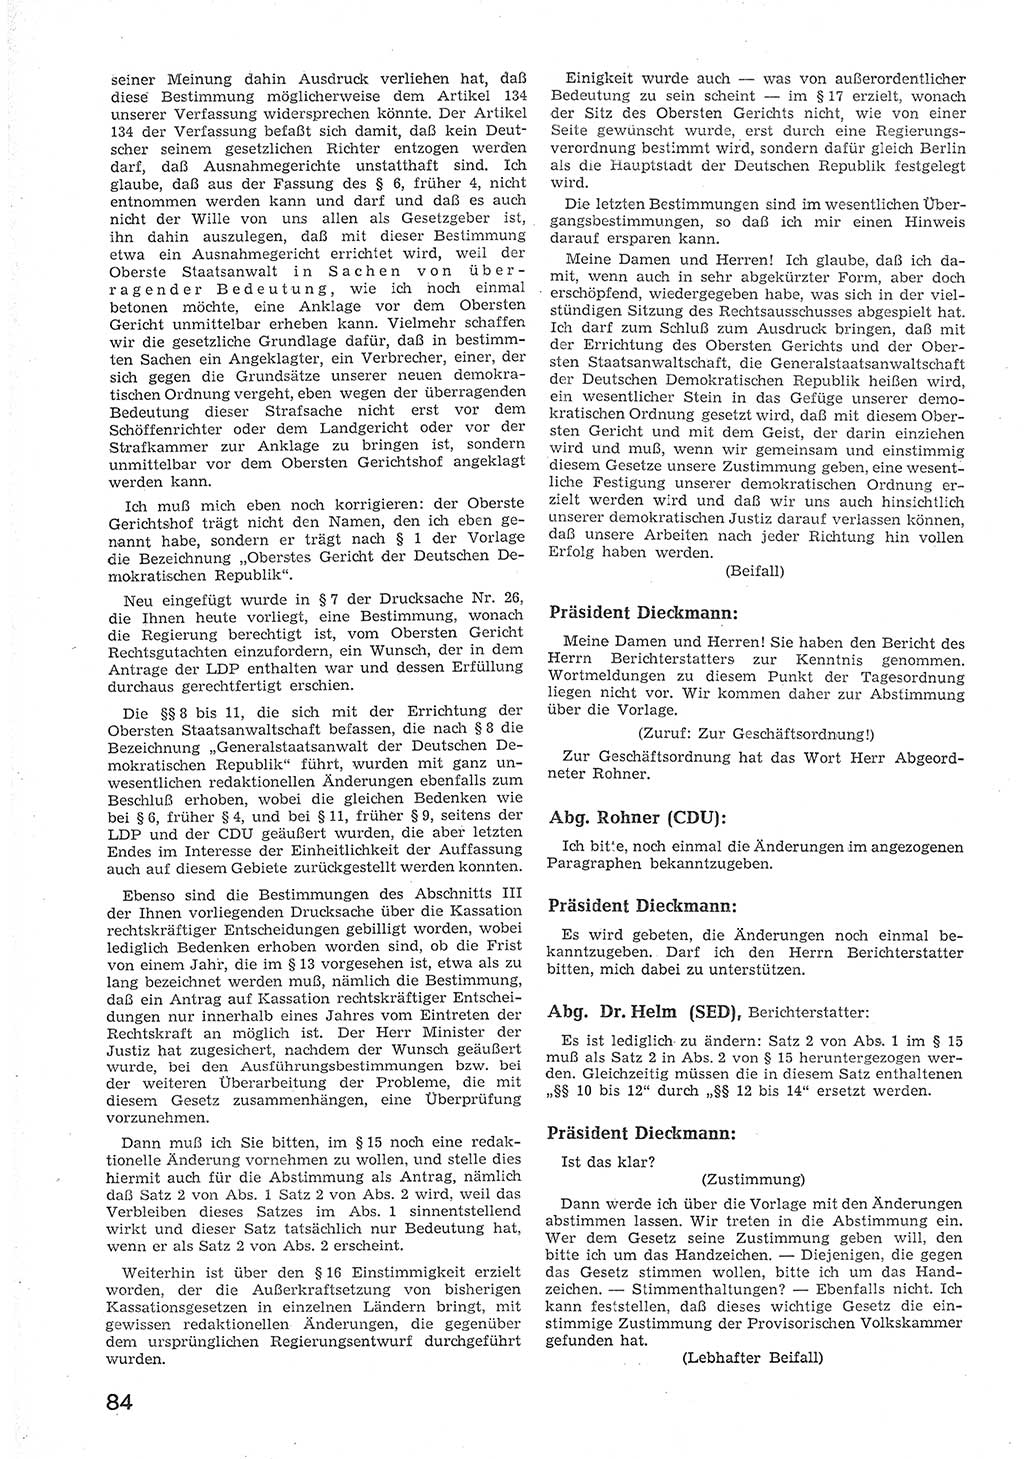 Provisorische Volkskammer (VK) der Deutschen Demokratischen Republik (DDR) 1949-1950, Dokument 96 (Prov. VK DDR 1949-1950, Dok. 96)